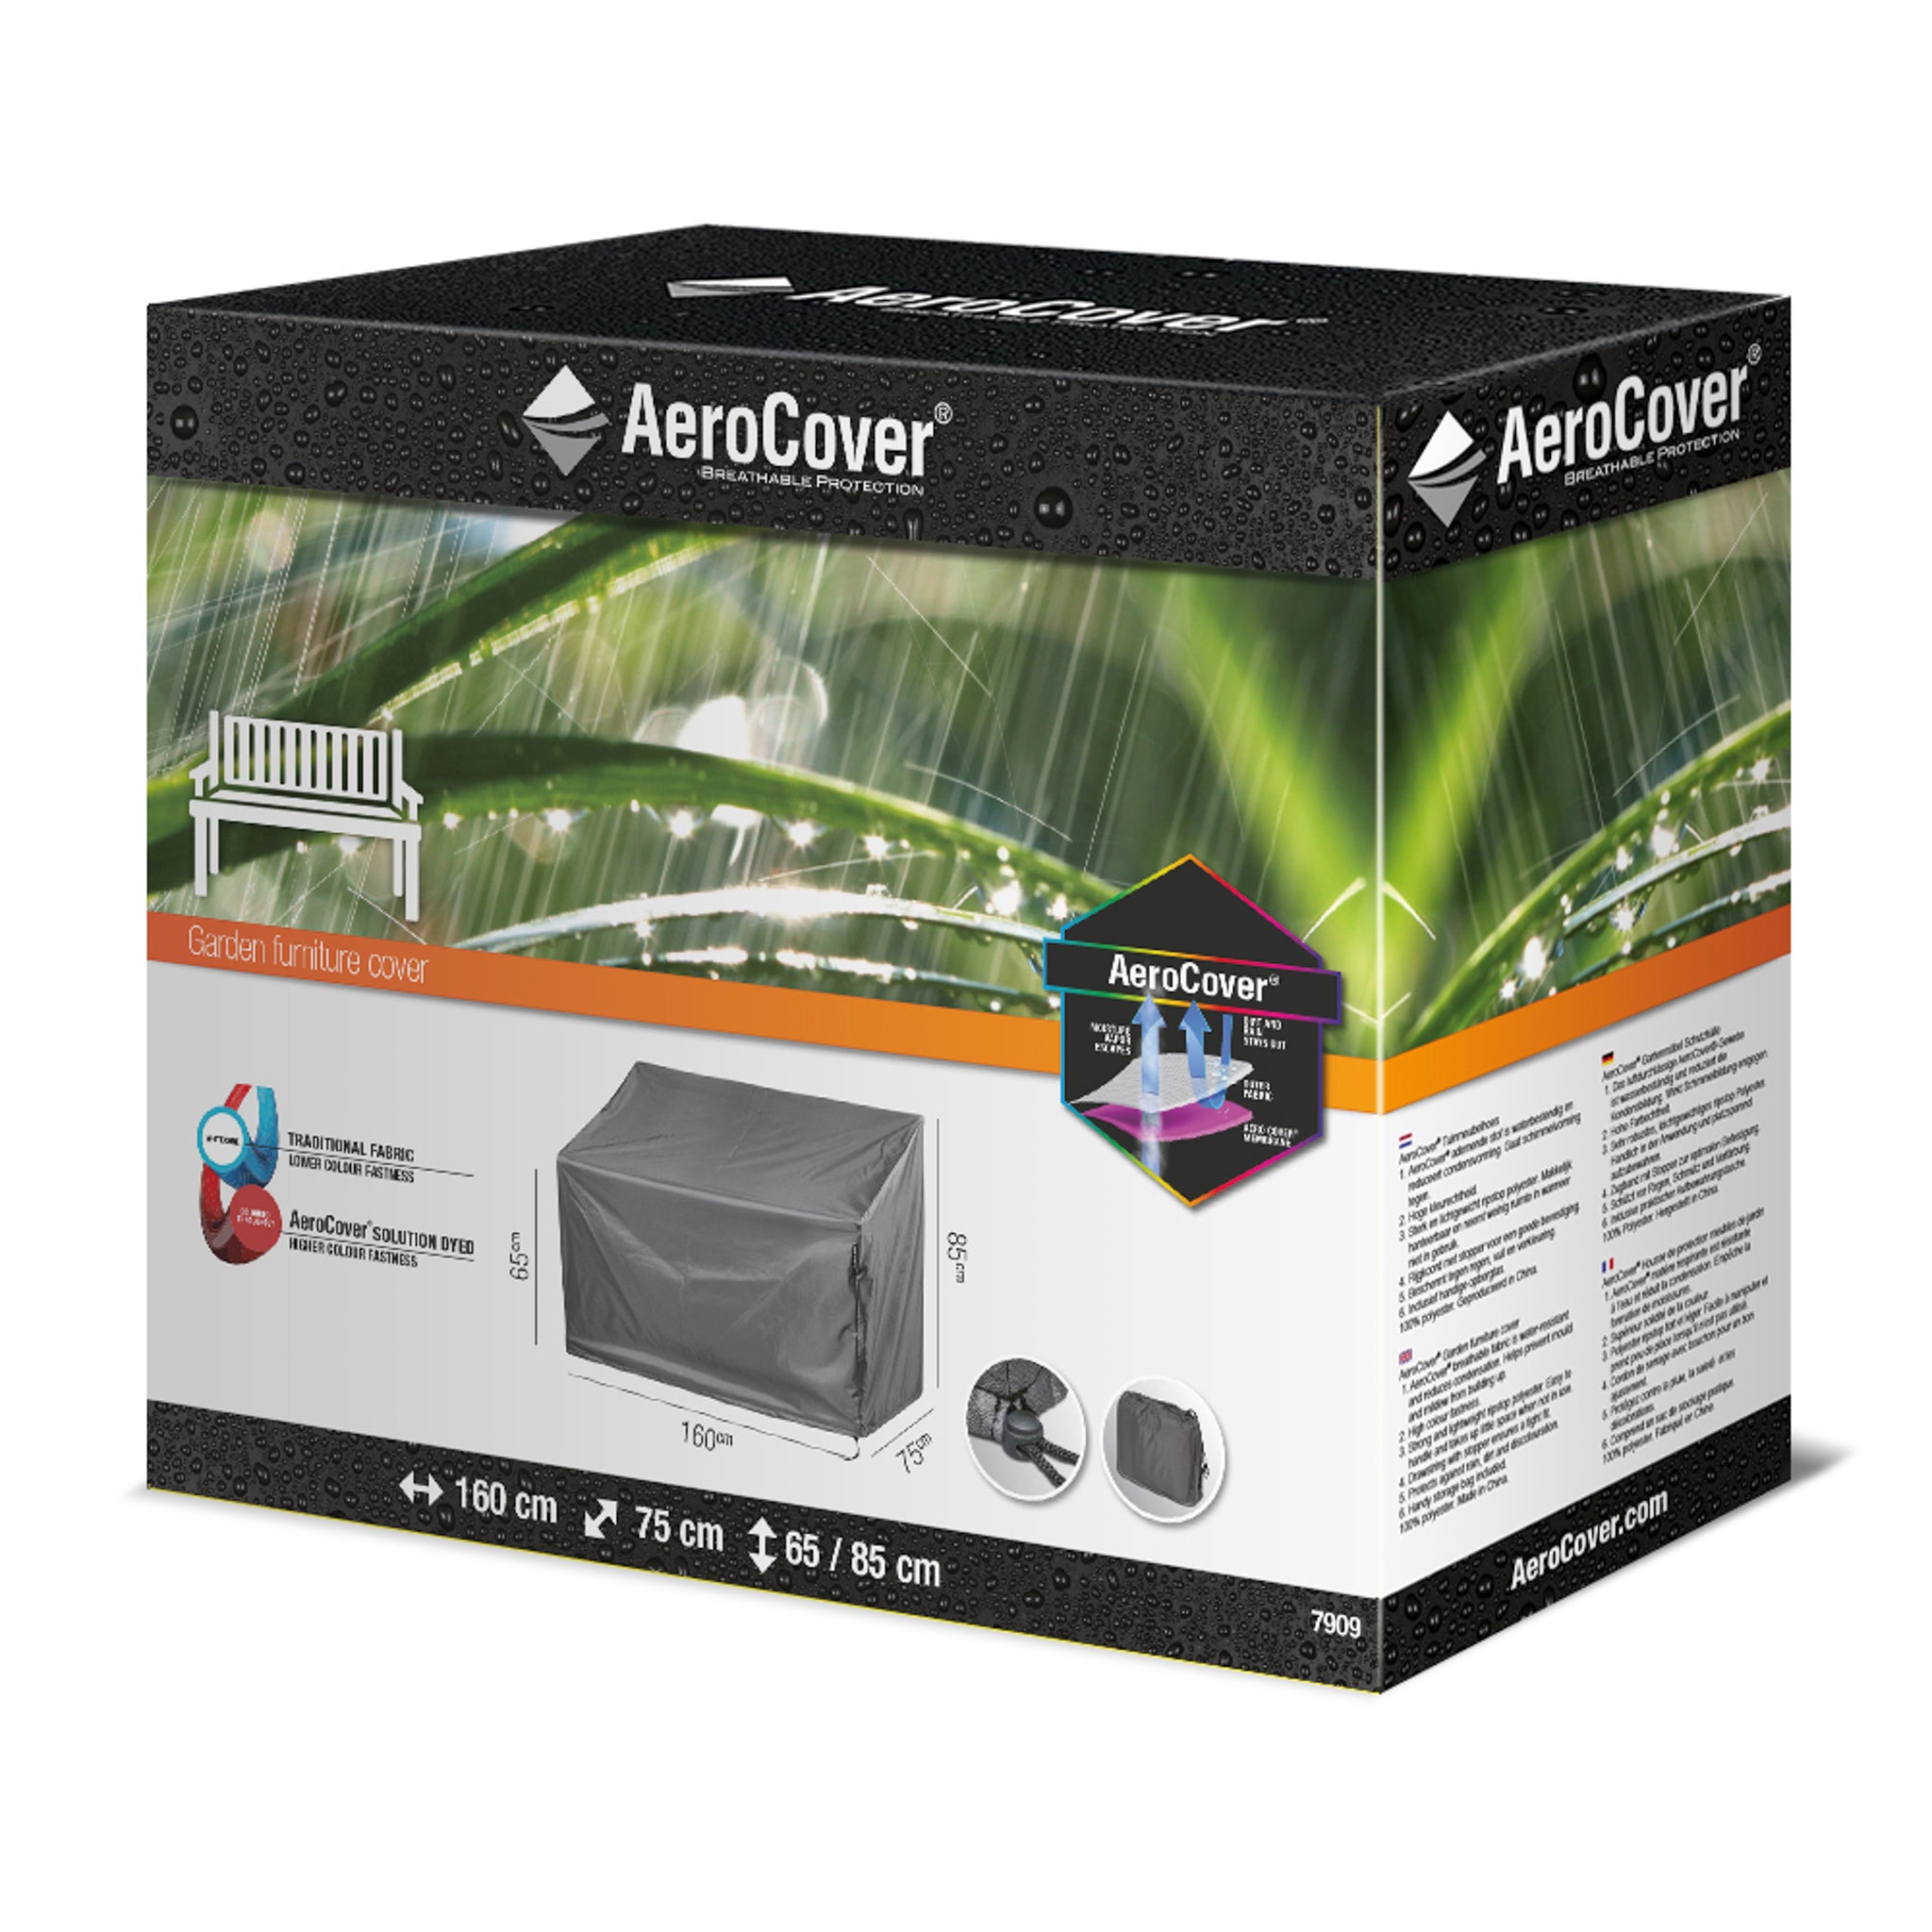 AeroCover - Garden Bench Cover 160x75x65/85cm high